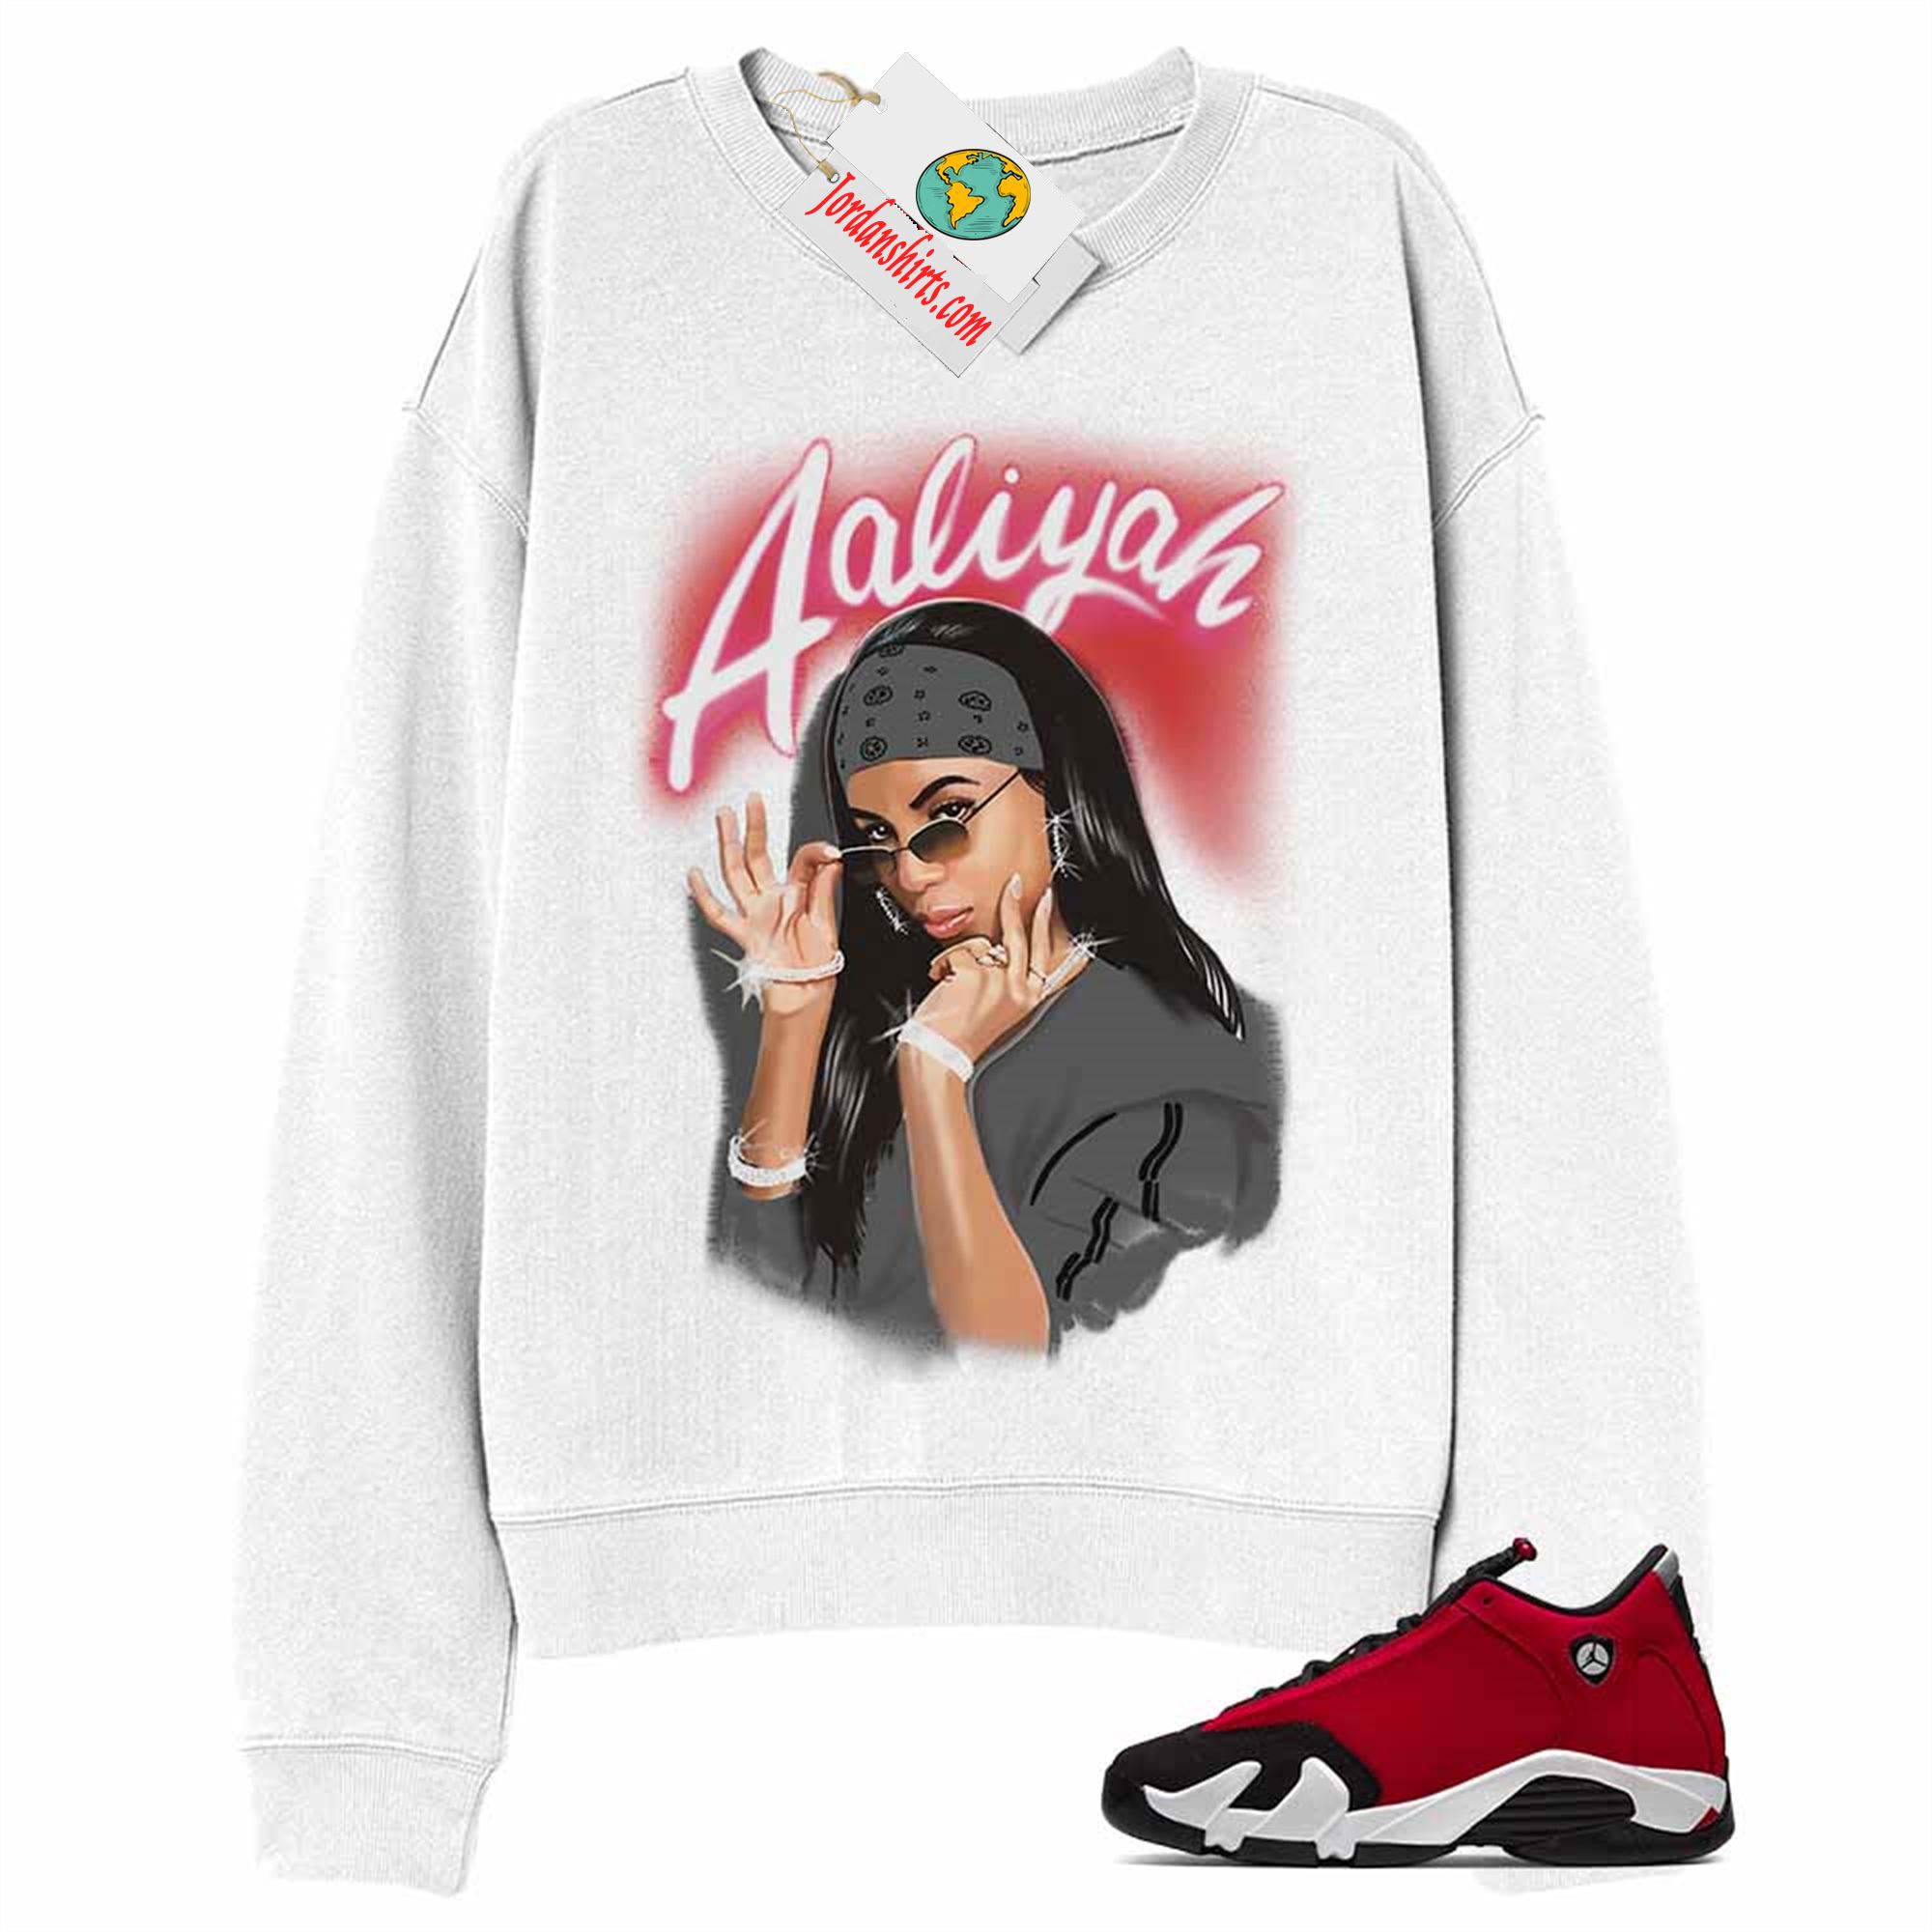 Jordan 14 Sweatshirt, Aaliyah Airbrush White Sweatshirt Air Jordan 14 Gym Red 14s Plus Size Up To 5xl